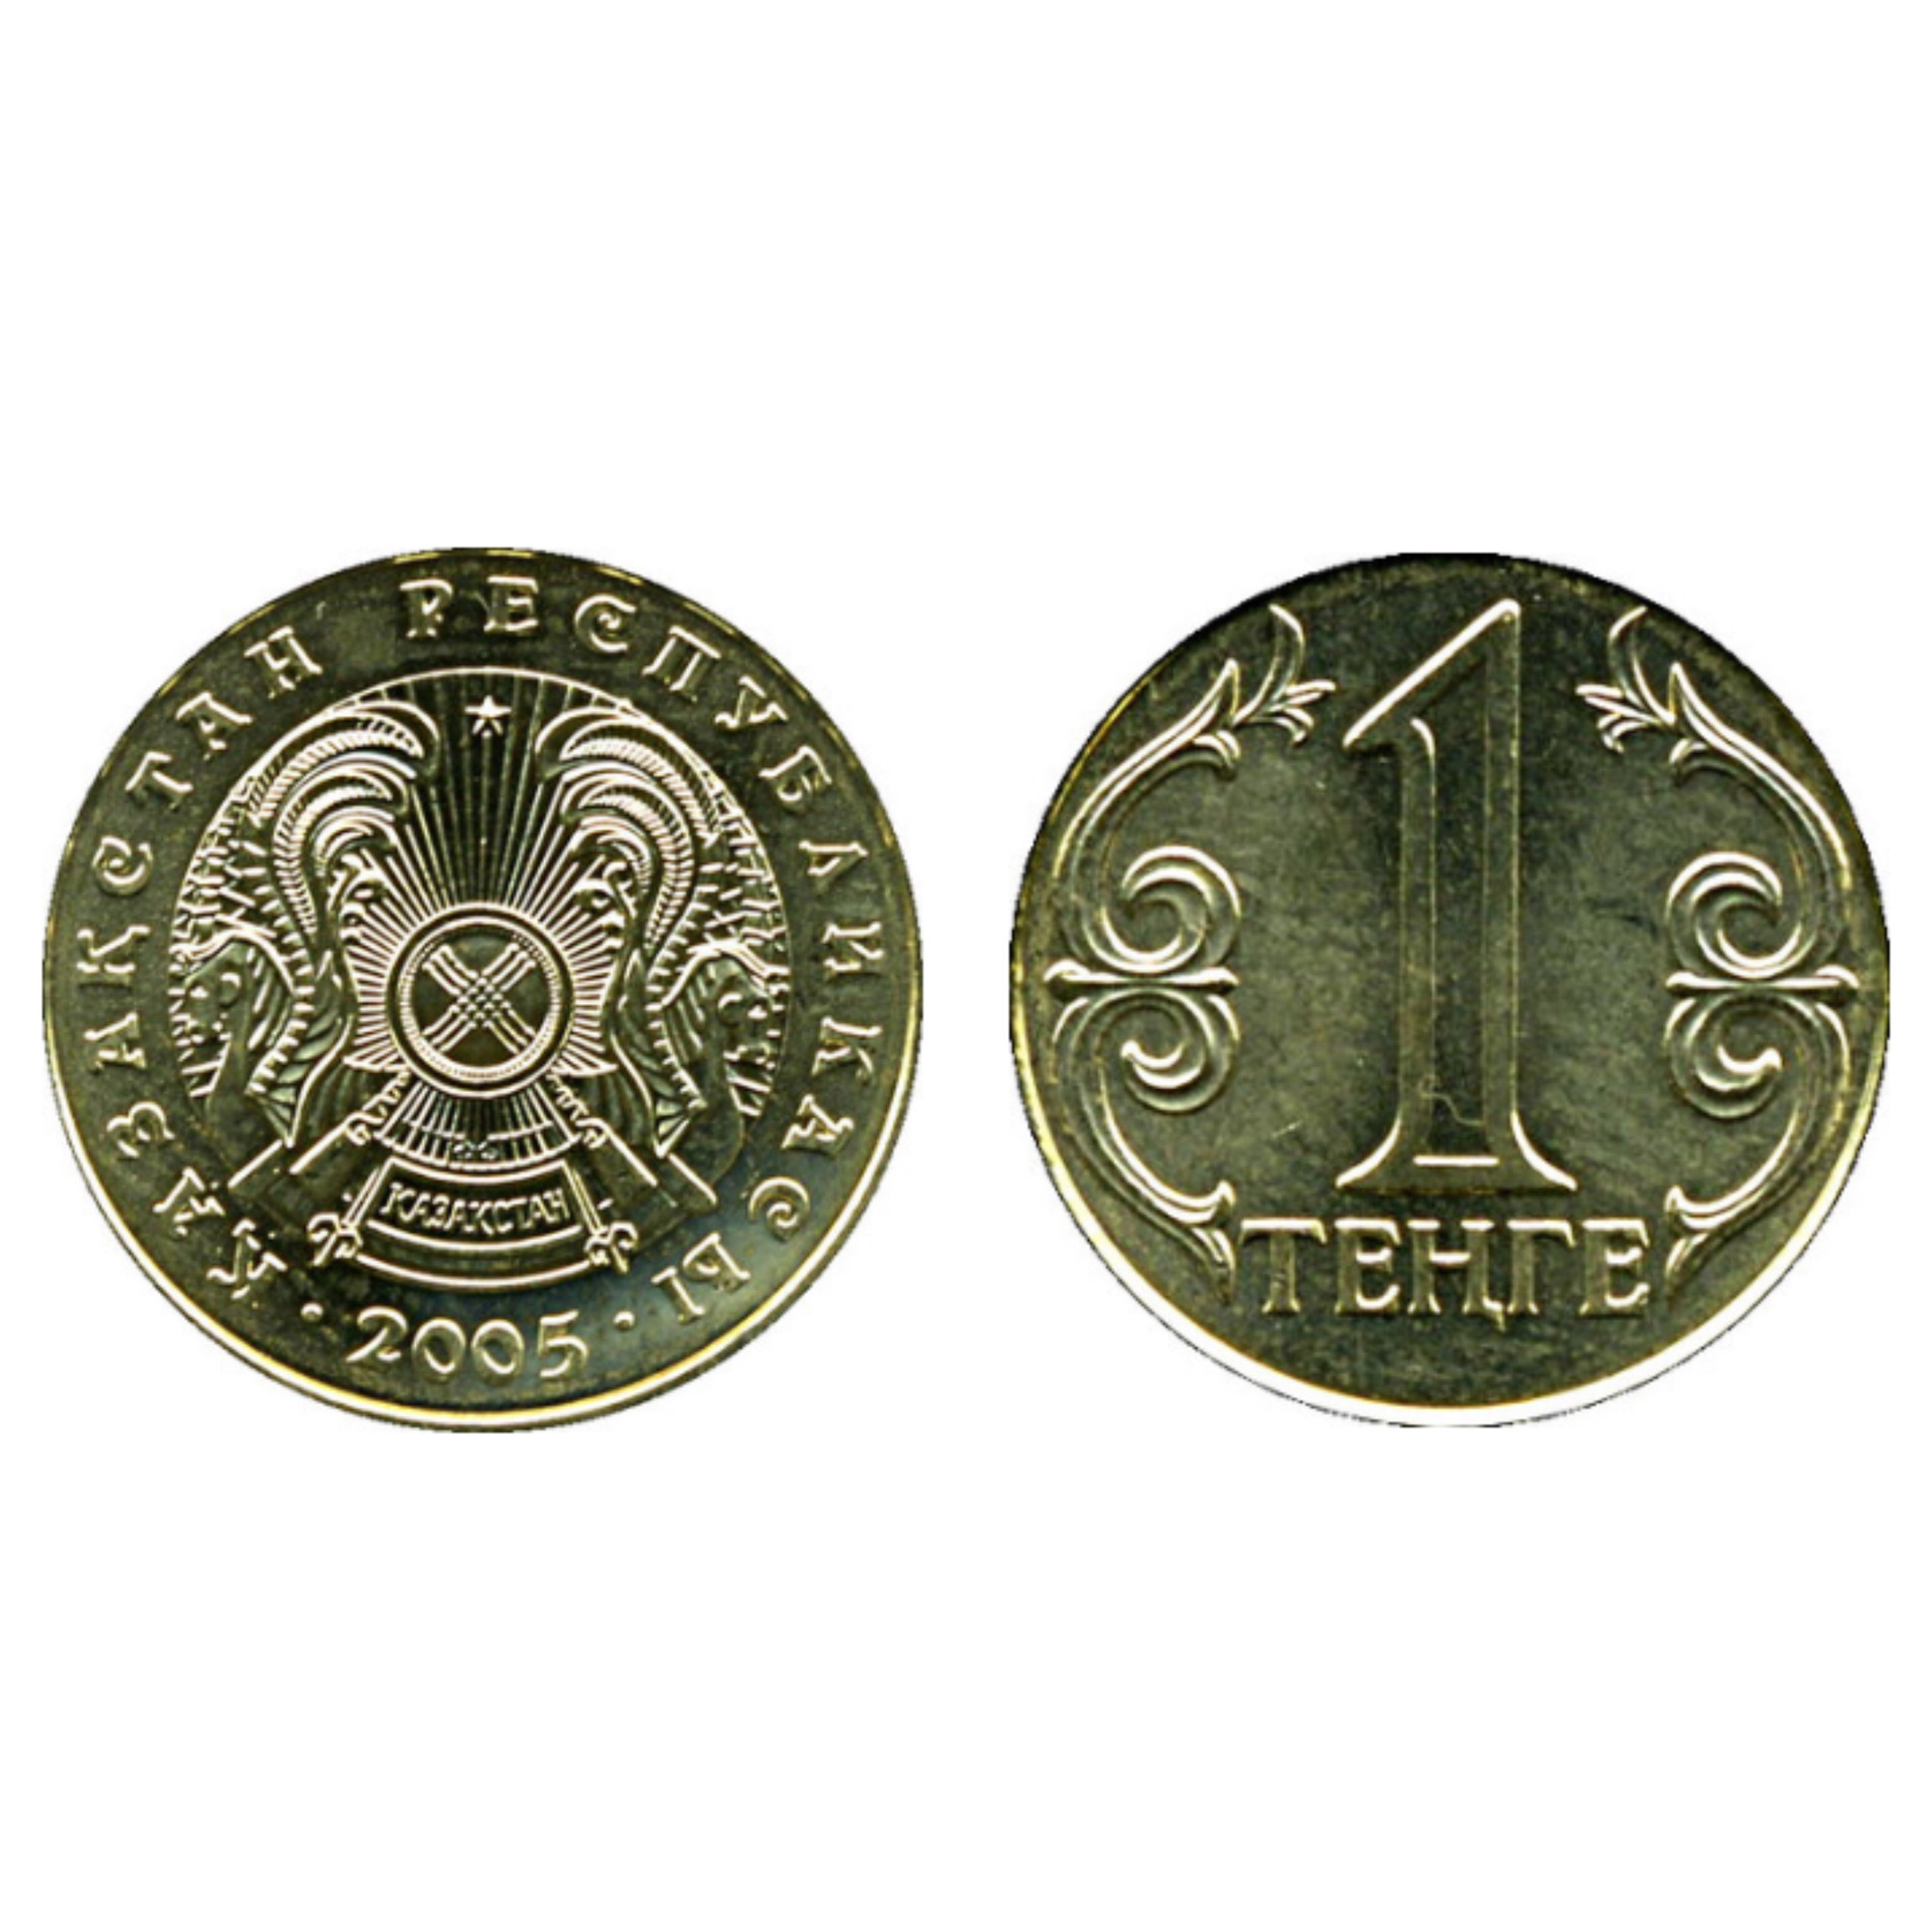 Đồng xu 1 tenge của Kazakhstan, quốc gia ở Trung Á